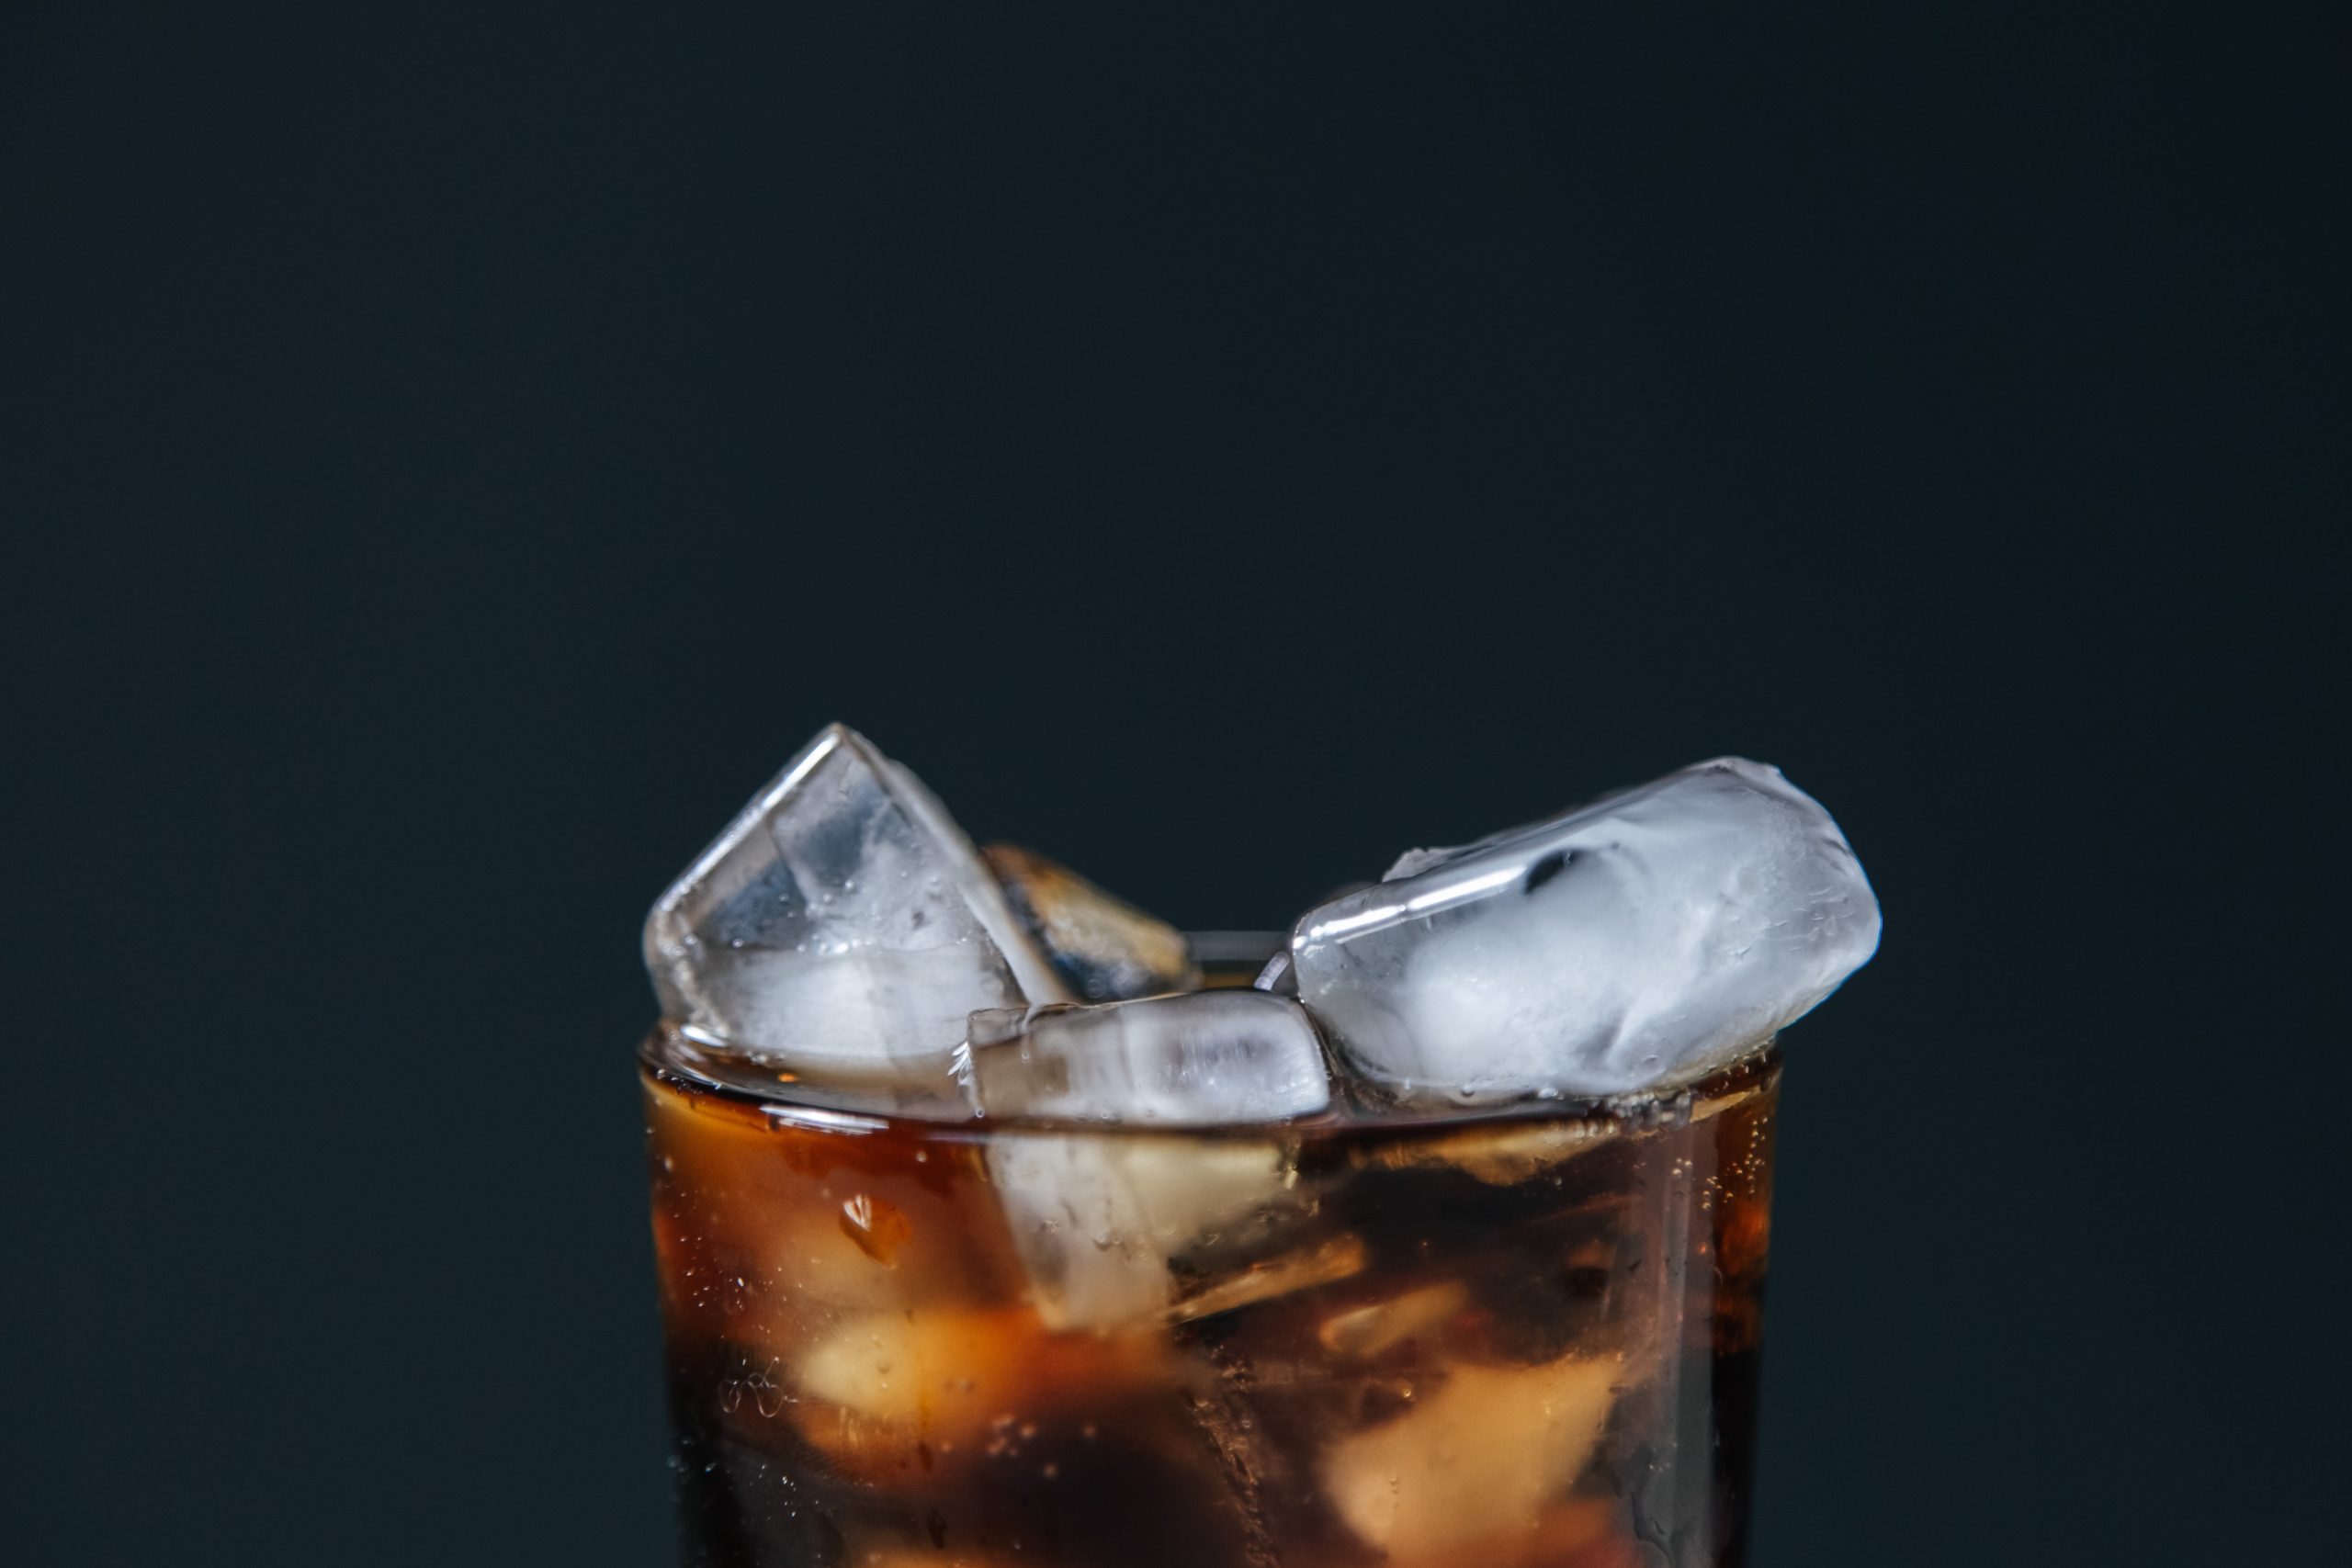 Consumo de bebidas azucaradas: Nutricionista advierte los riesgos de aumento de cáncer de colon